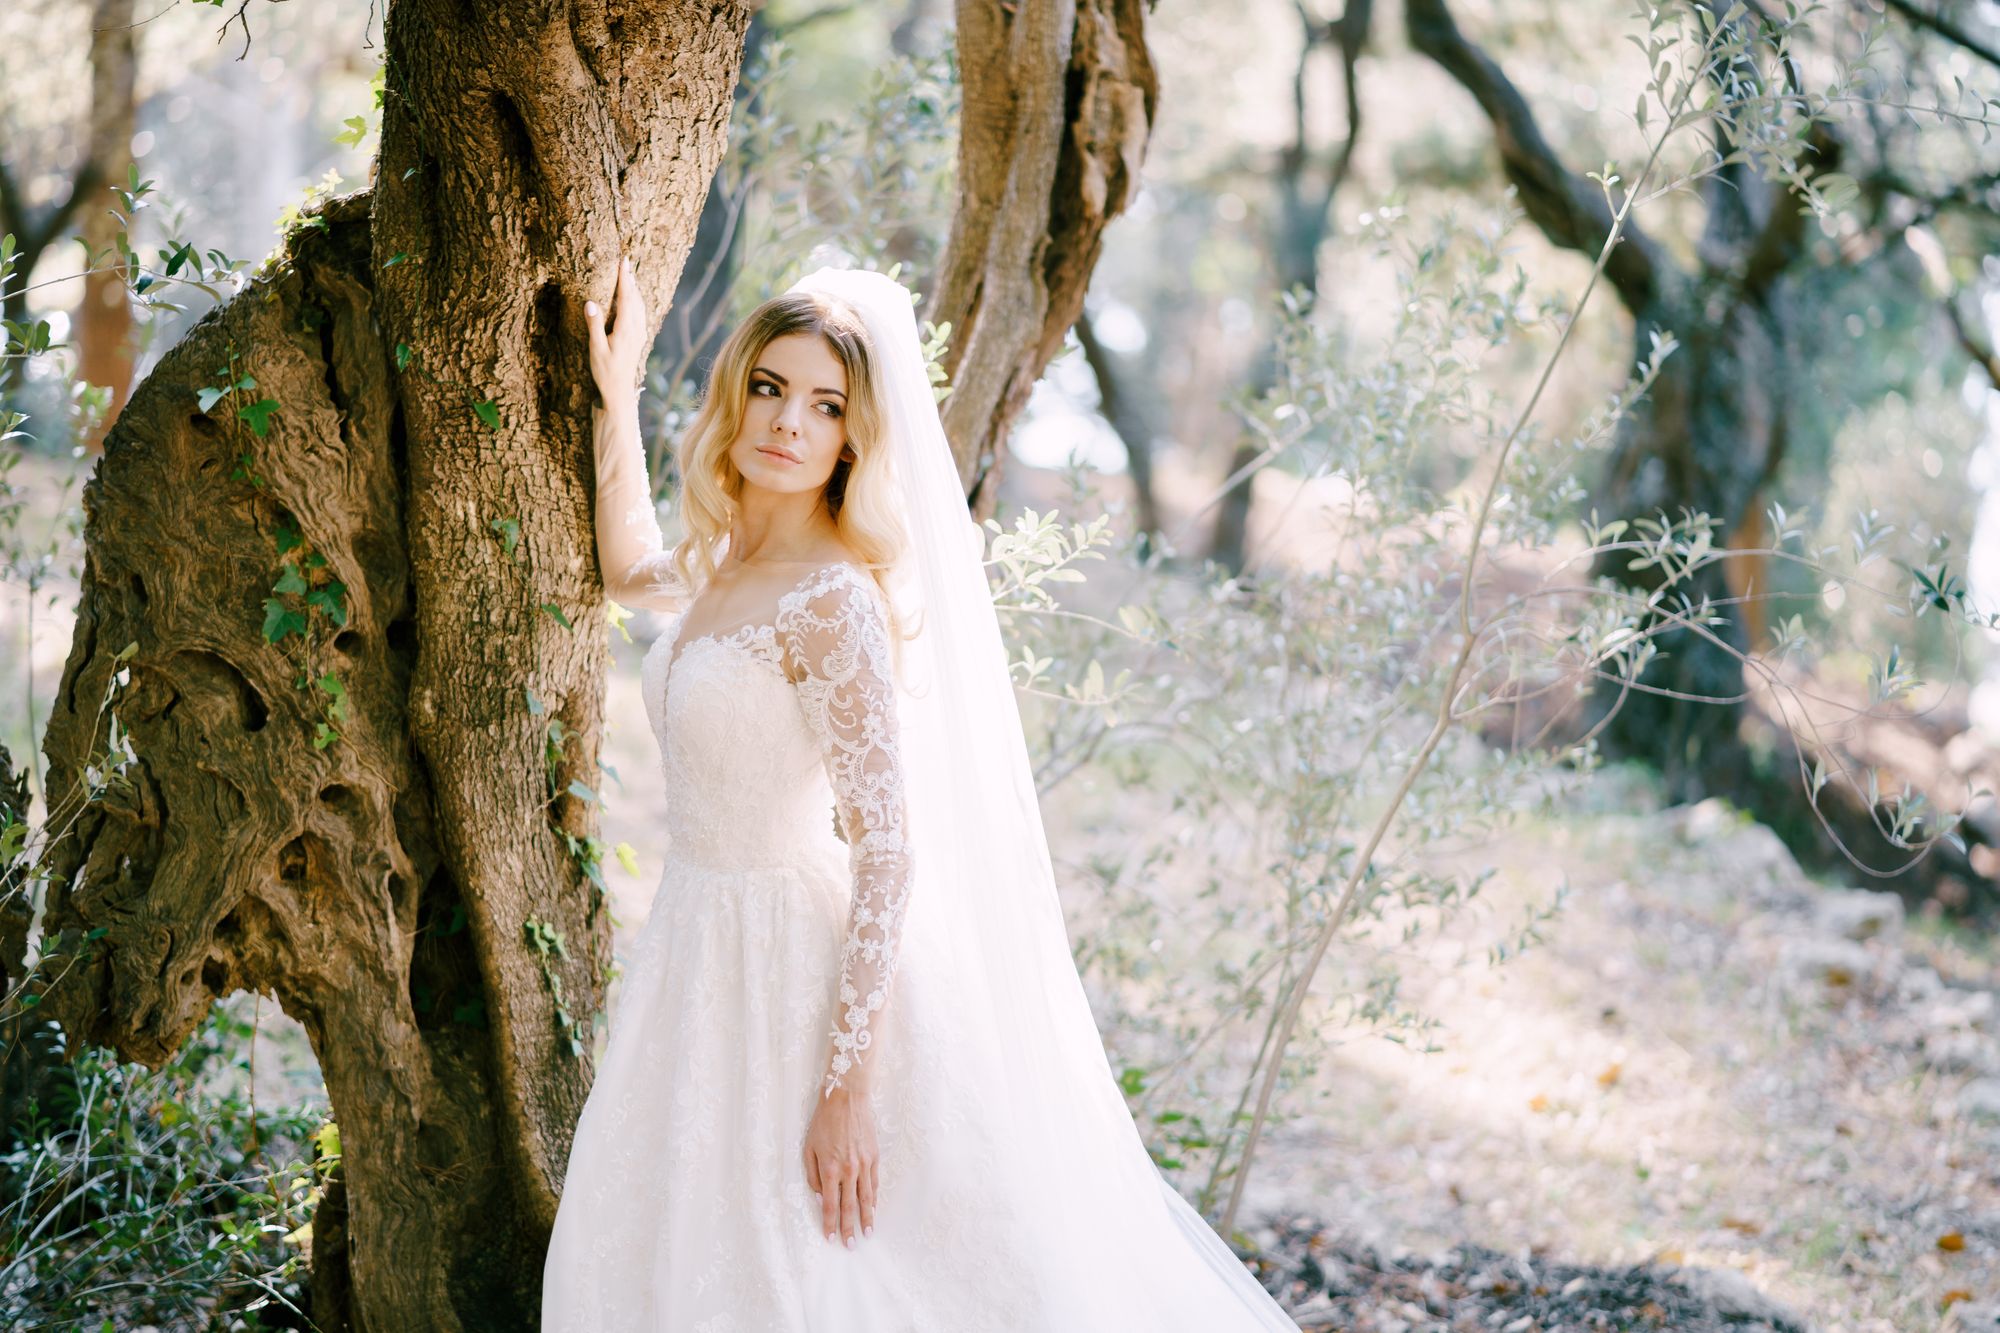 Eine Braut in einem Hochzeitskleid lehnt an einem Baum.